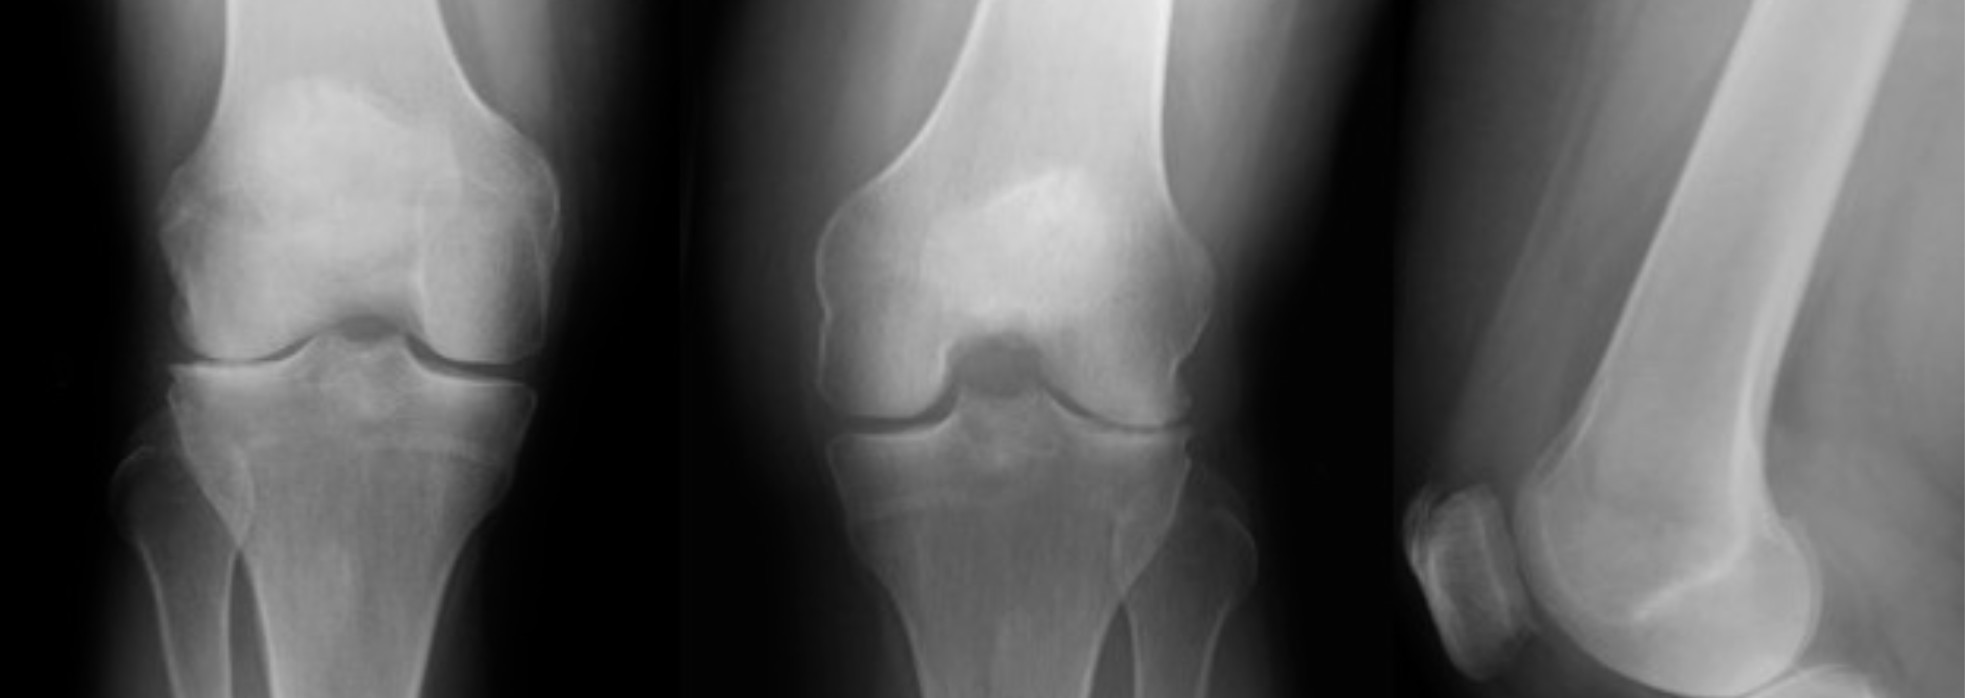 x-rays of knee osteoarthritis